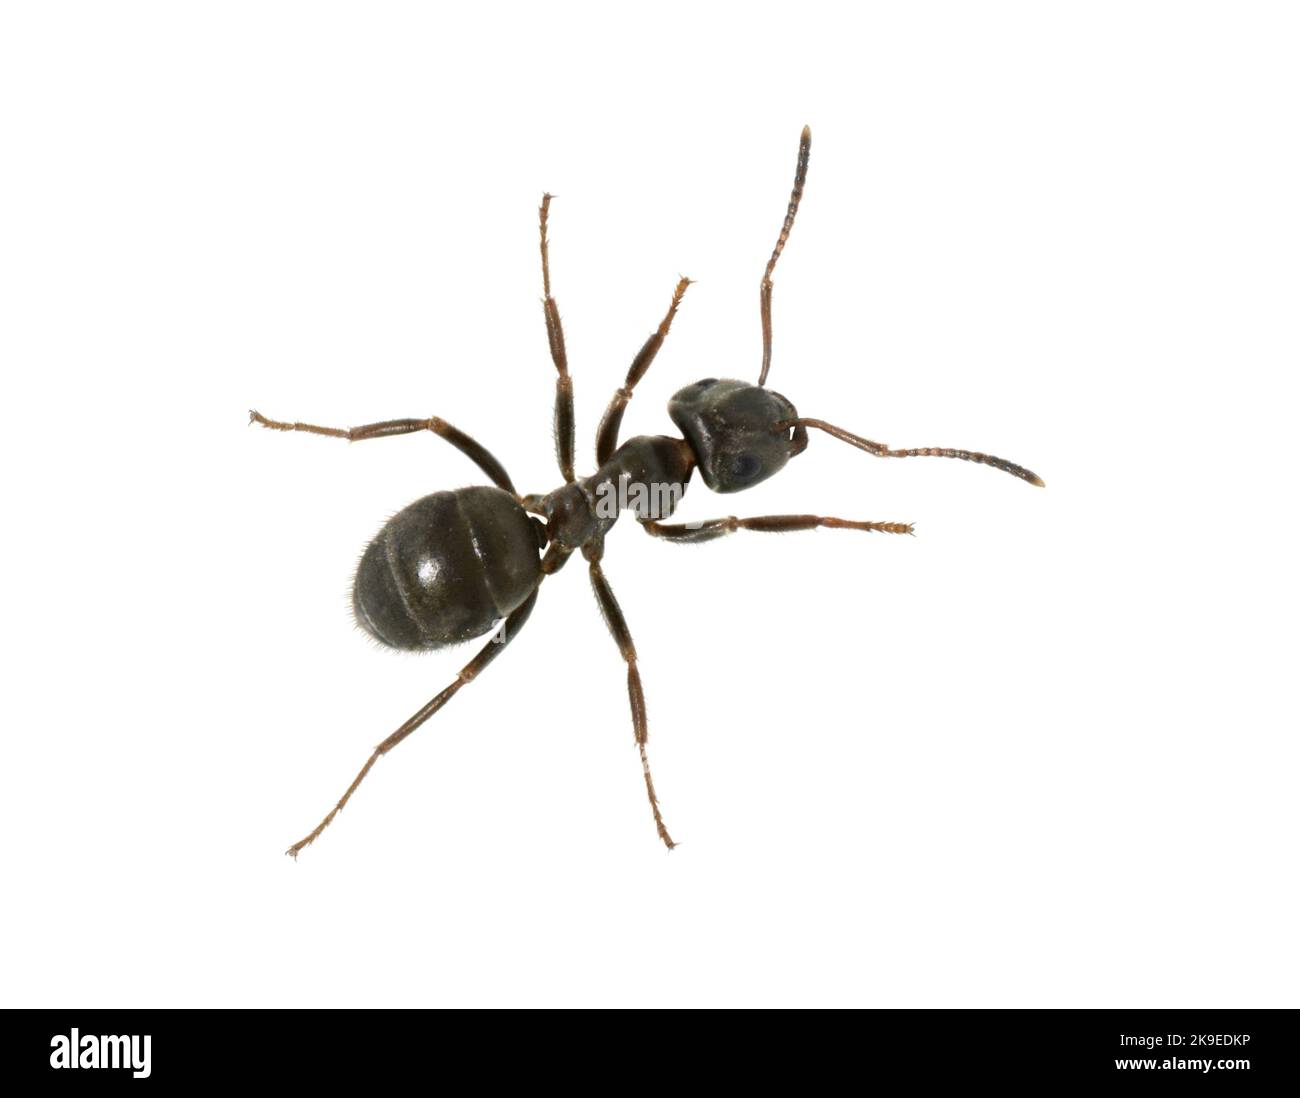 Common Black Ant - Lasius niger Stock Photo